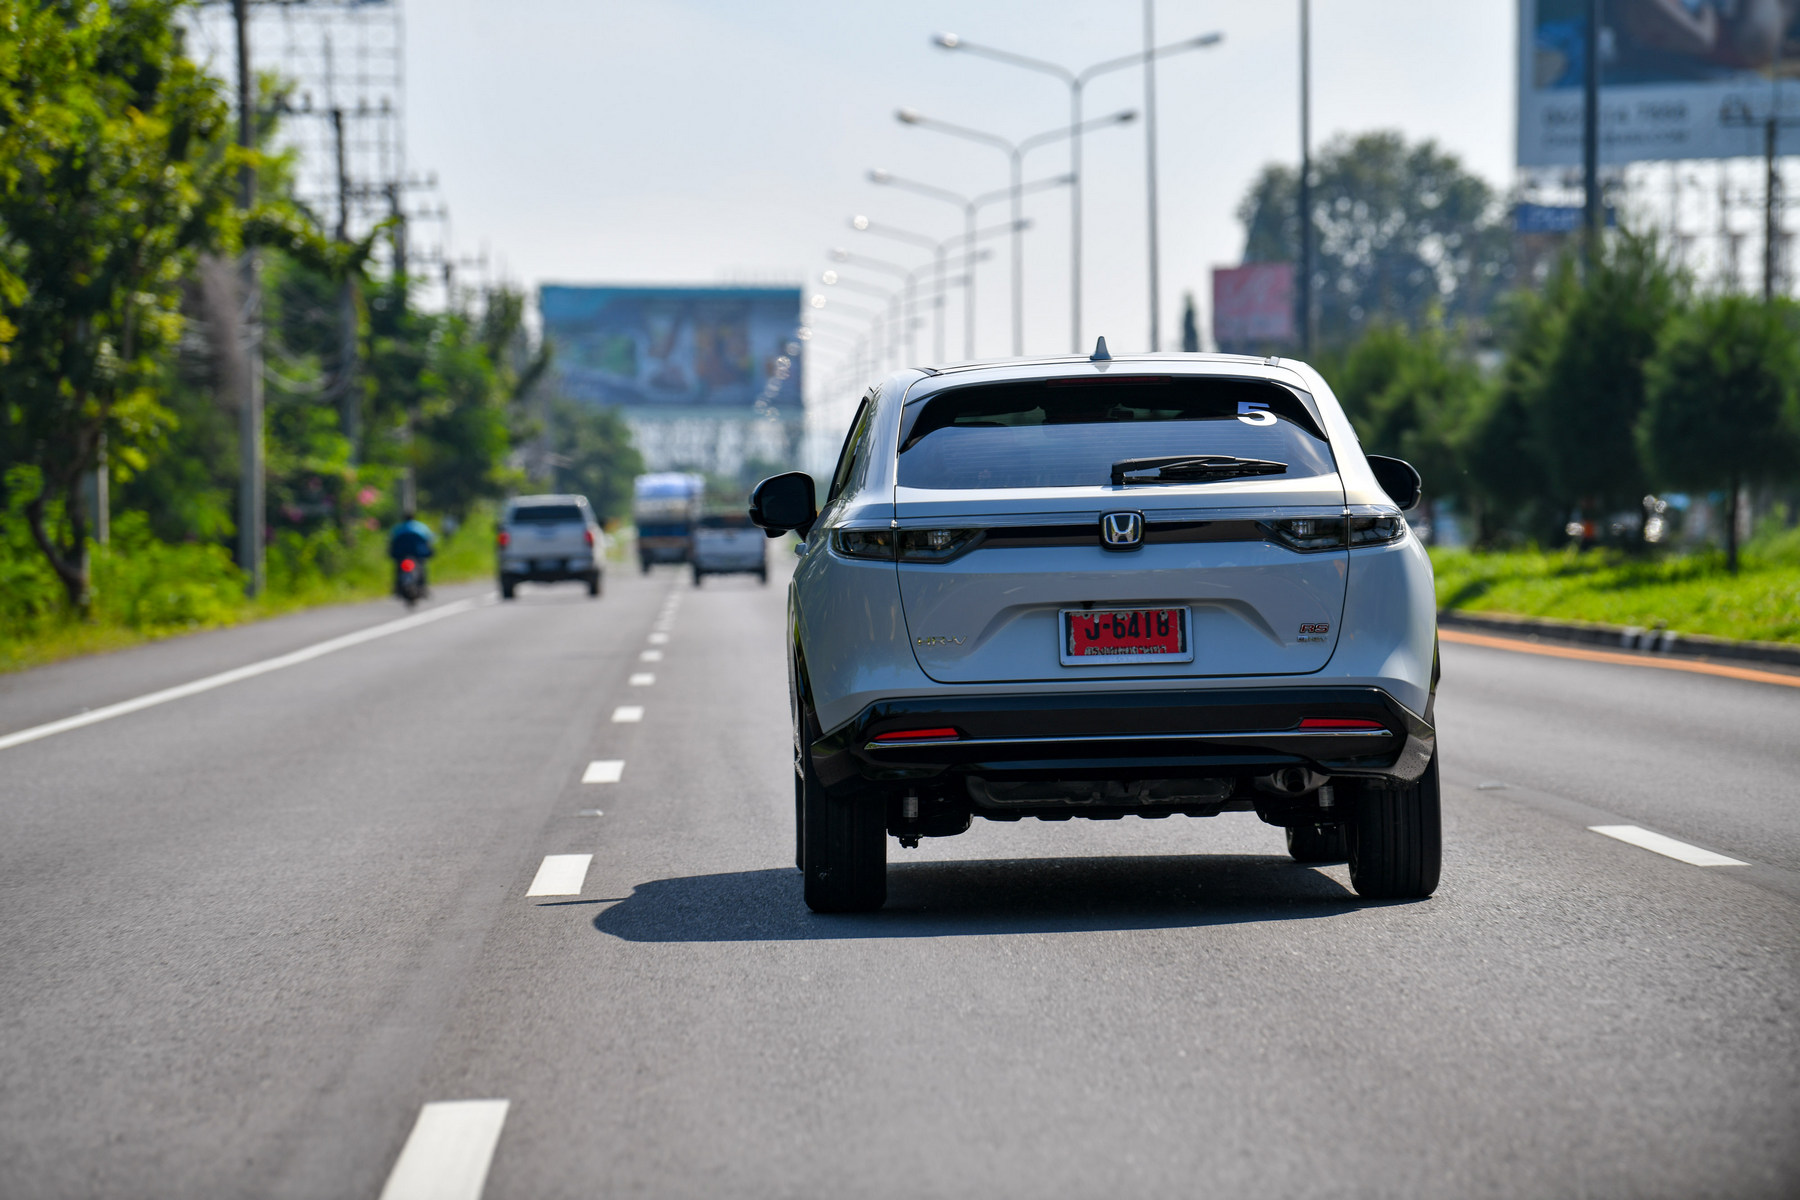 ฮอนด้าคว้าอันดับ 1 ยอดขายกลุ่ม xEV ในตลาดรถยนต์ประเทศไทยปี 2565 พิสูจน์ความเชื่อมั่นในยนตรกรรมฟูลไฮบริด e:HEV ด้วยสมรรถนะทรงพลัง ประหยัดน้ำมันดีเยี่ยม อุ่นใจด้วยศูนย์บริการที่ครอบคลุมทั่วประเทศ